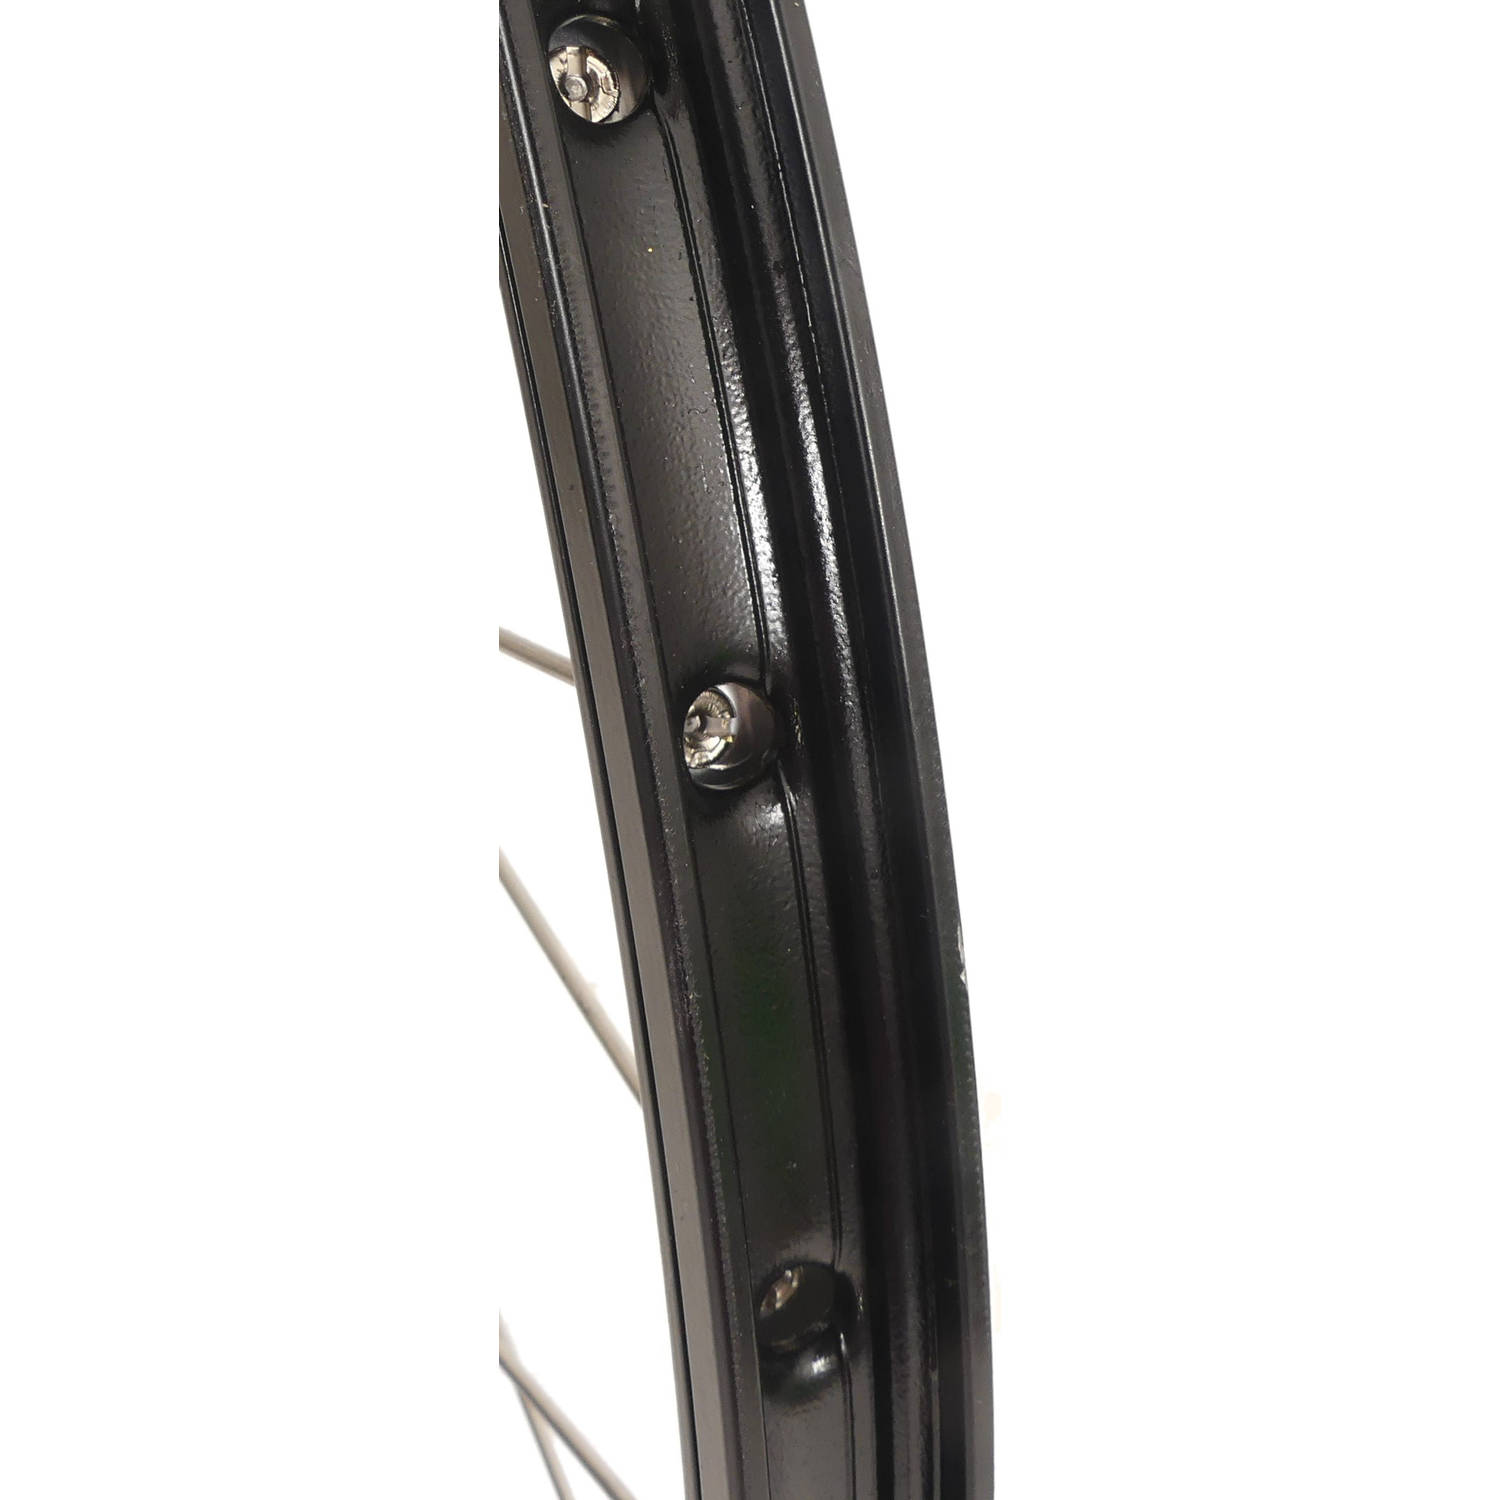 Achterwiel 28-622 x 19C met Shimano Nexus 7 naaf voor rollerbrake zwarte velg met RVS spaken